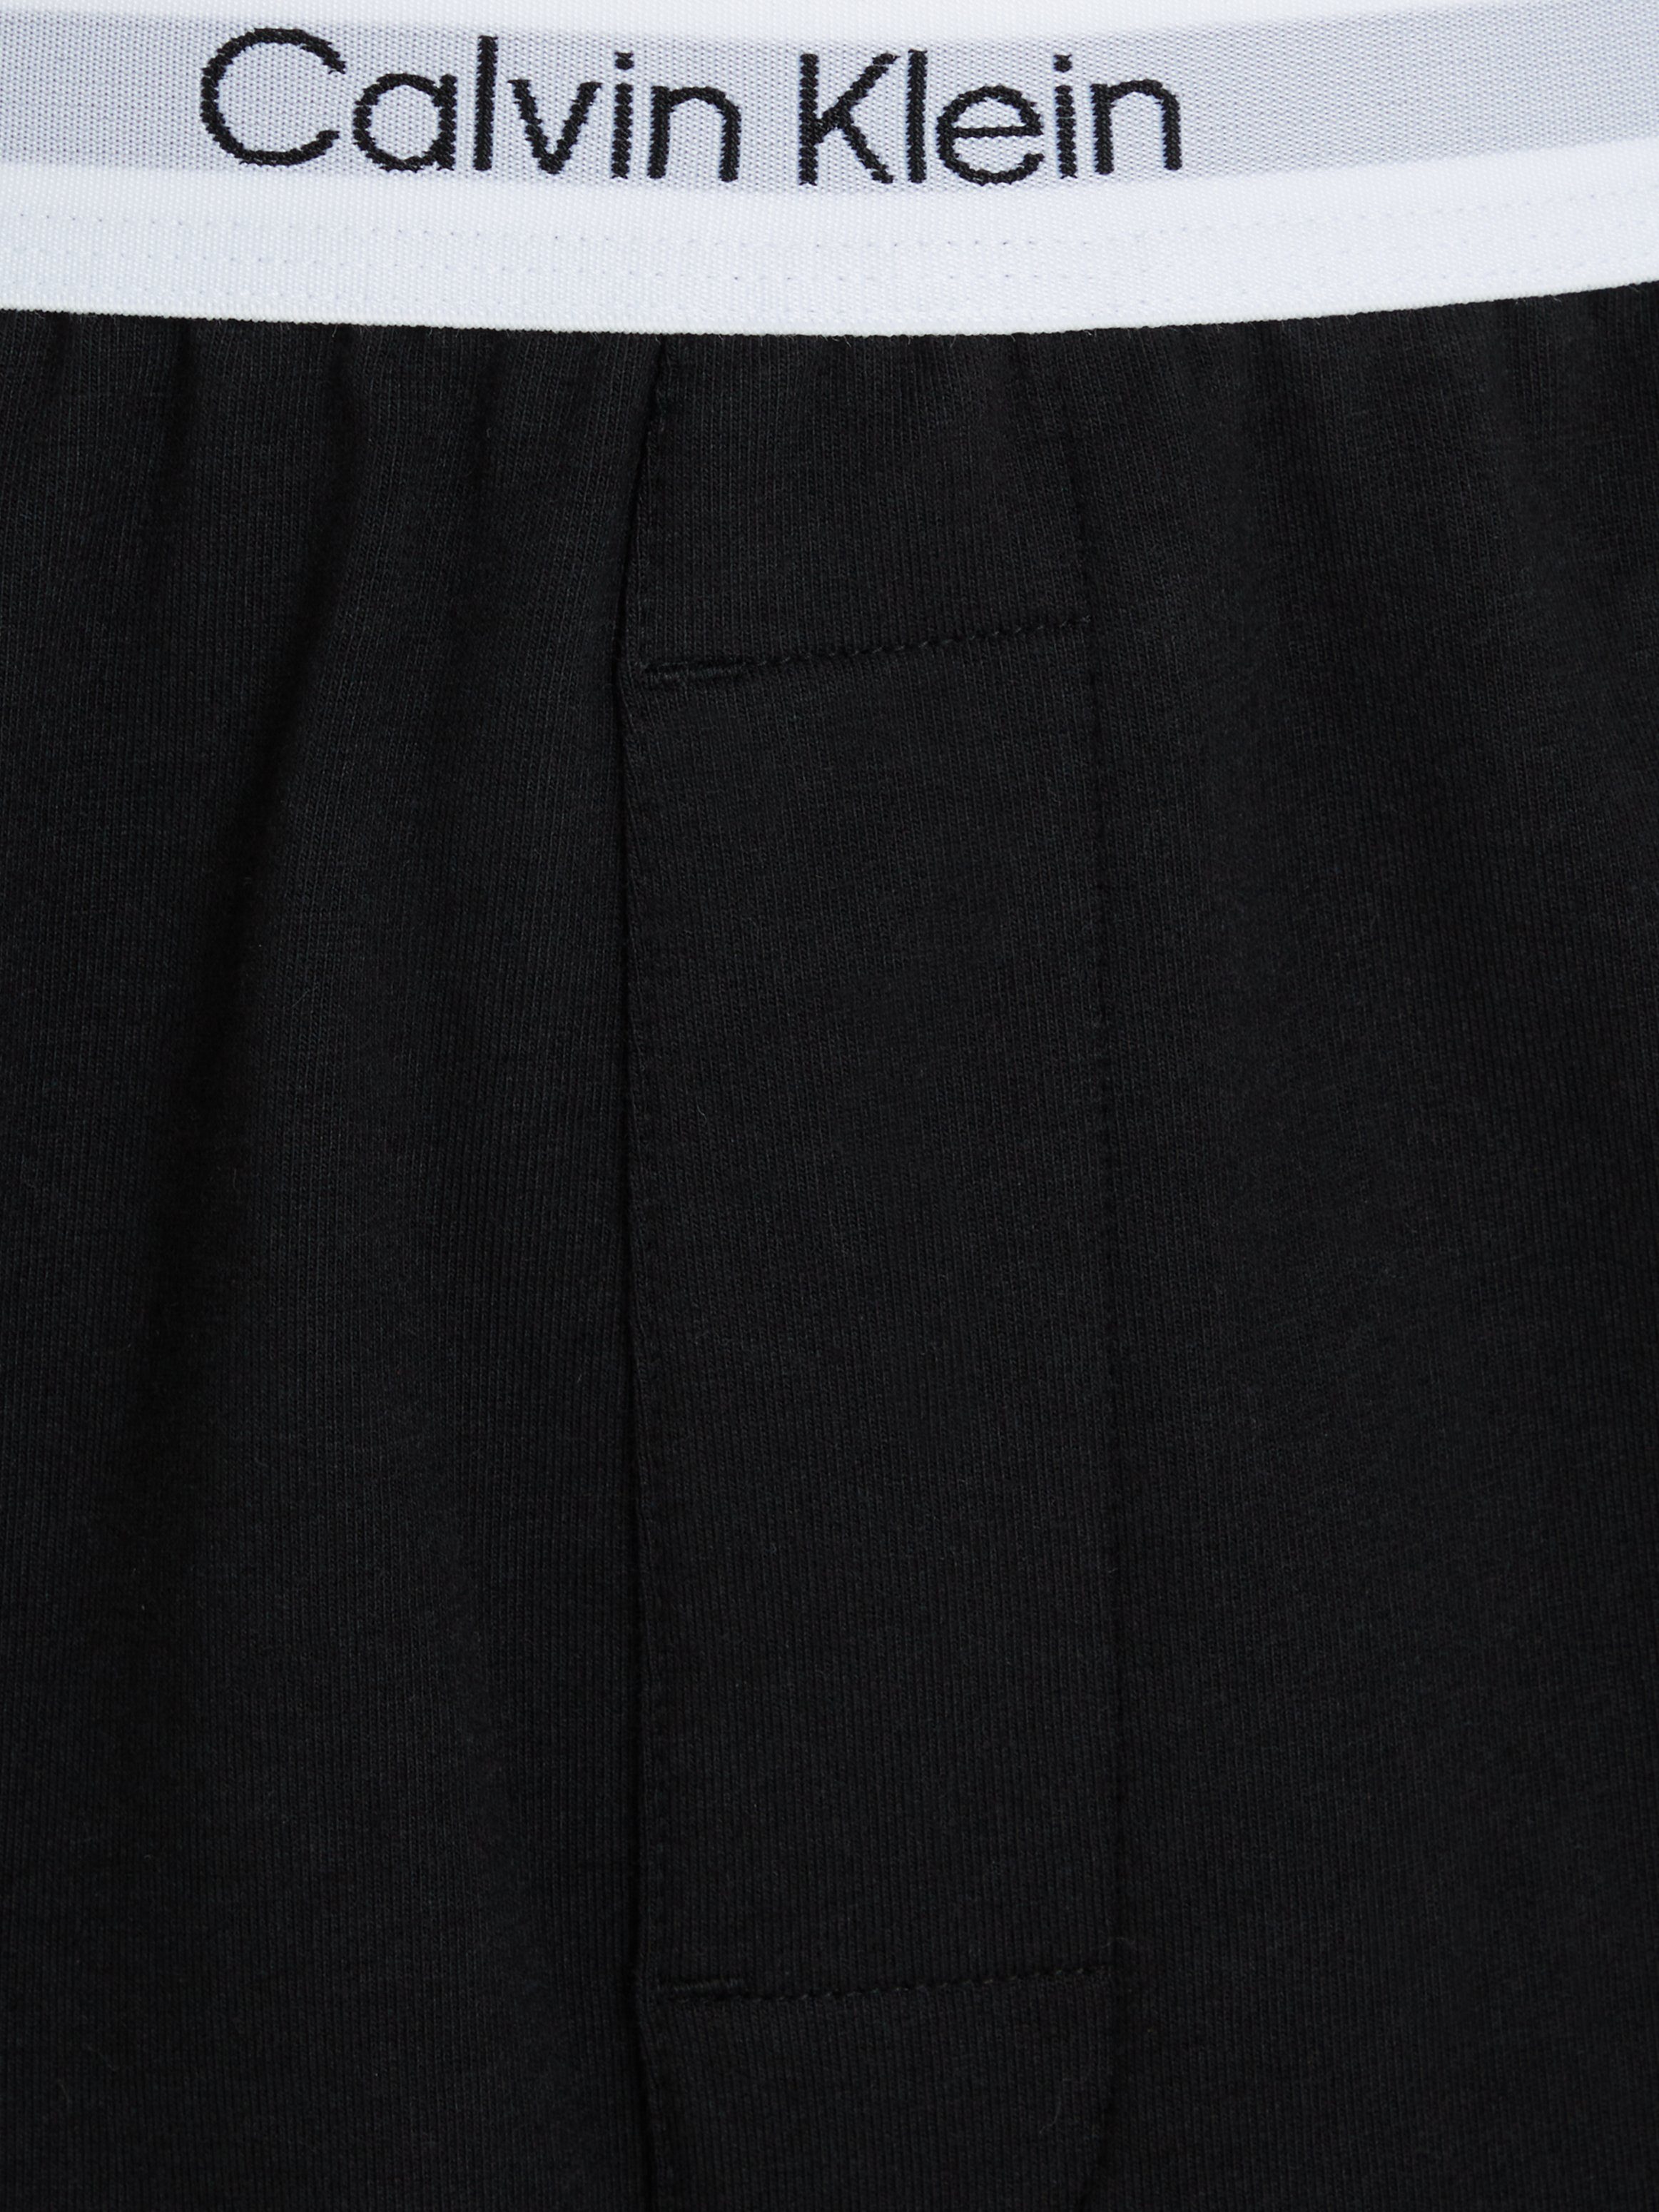 Underwear Klein schwarz Schlafshorts am Calvin Wäschebund Klein Logoschriftzug mit Calvin